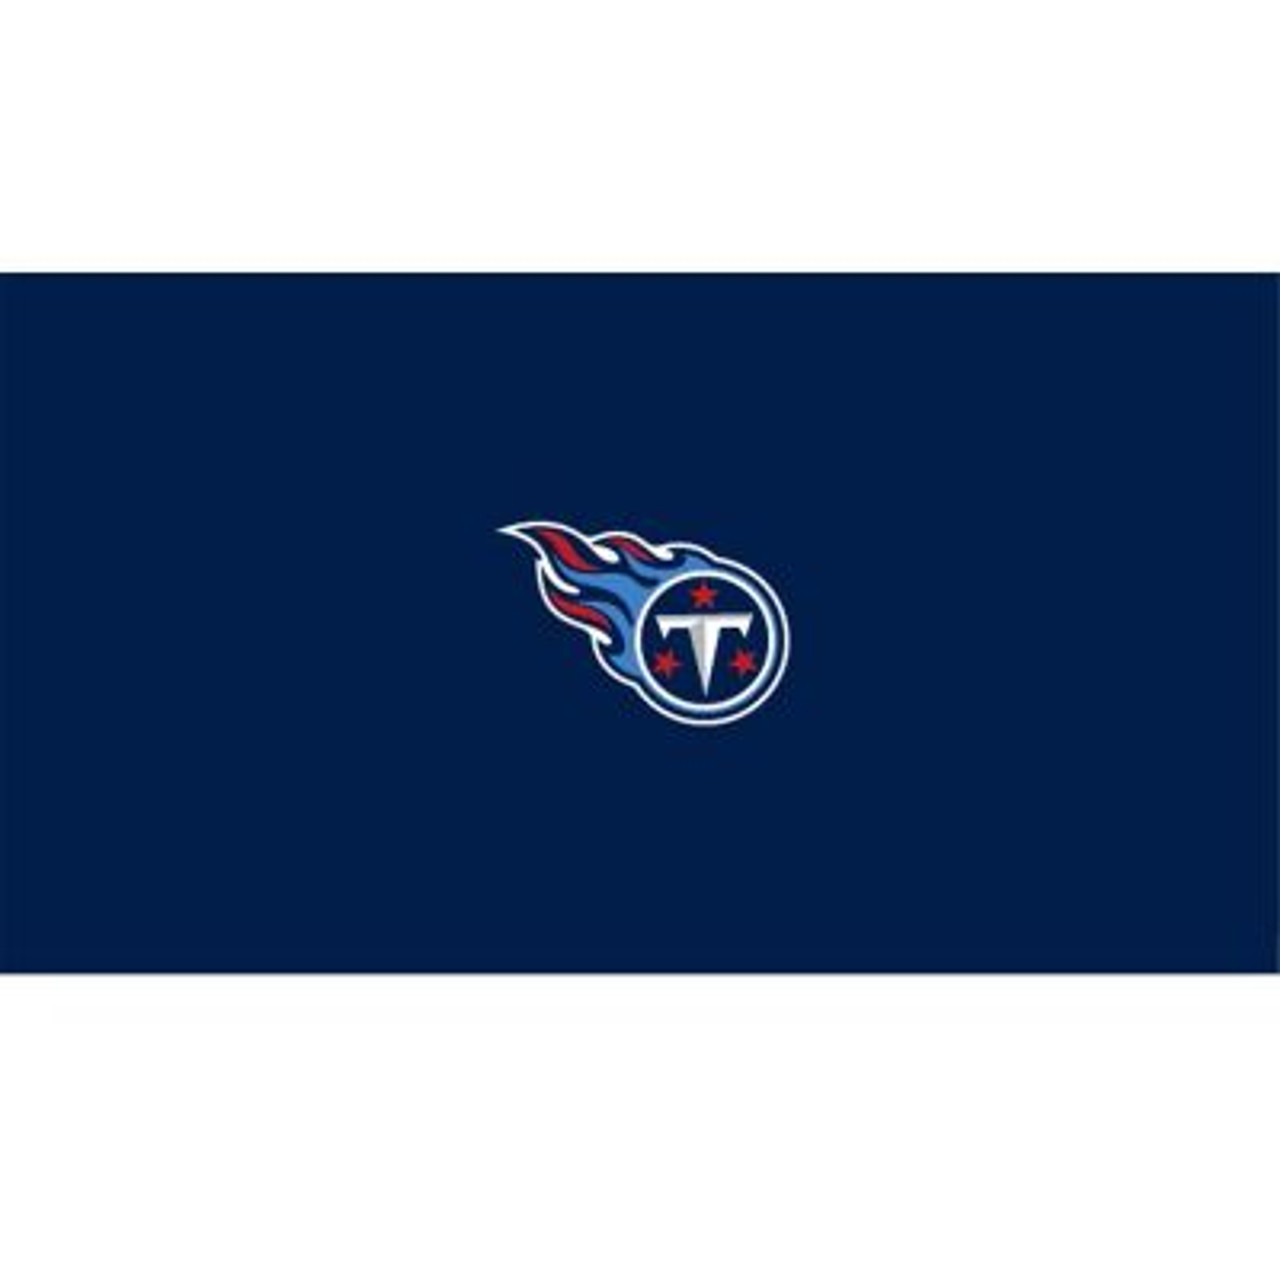 52-1028, 52-1028-9, Tennessee, Titans,  Billiard, pool, 8', 9', cloth, felt, Logo, NFL